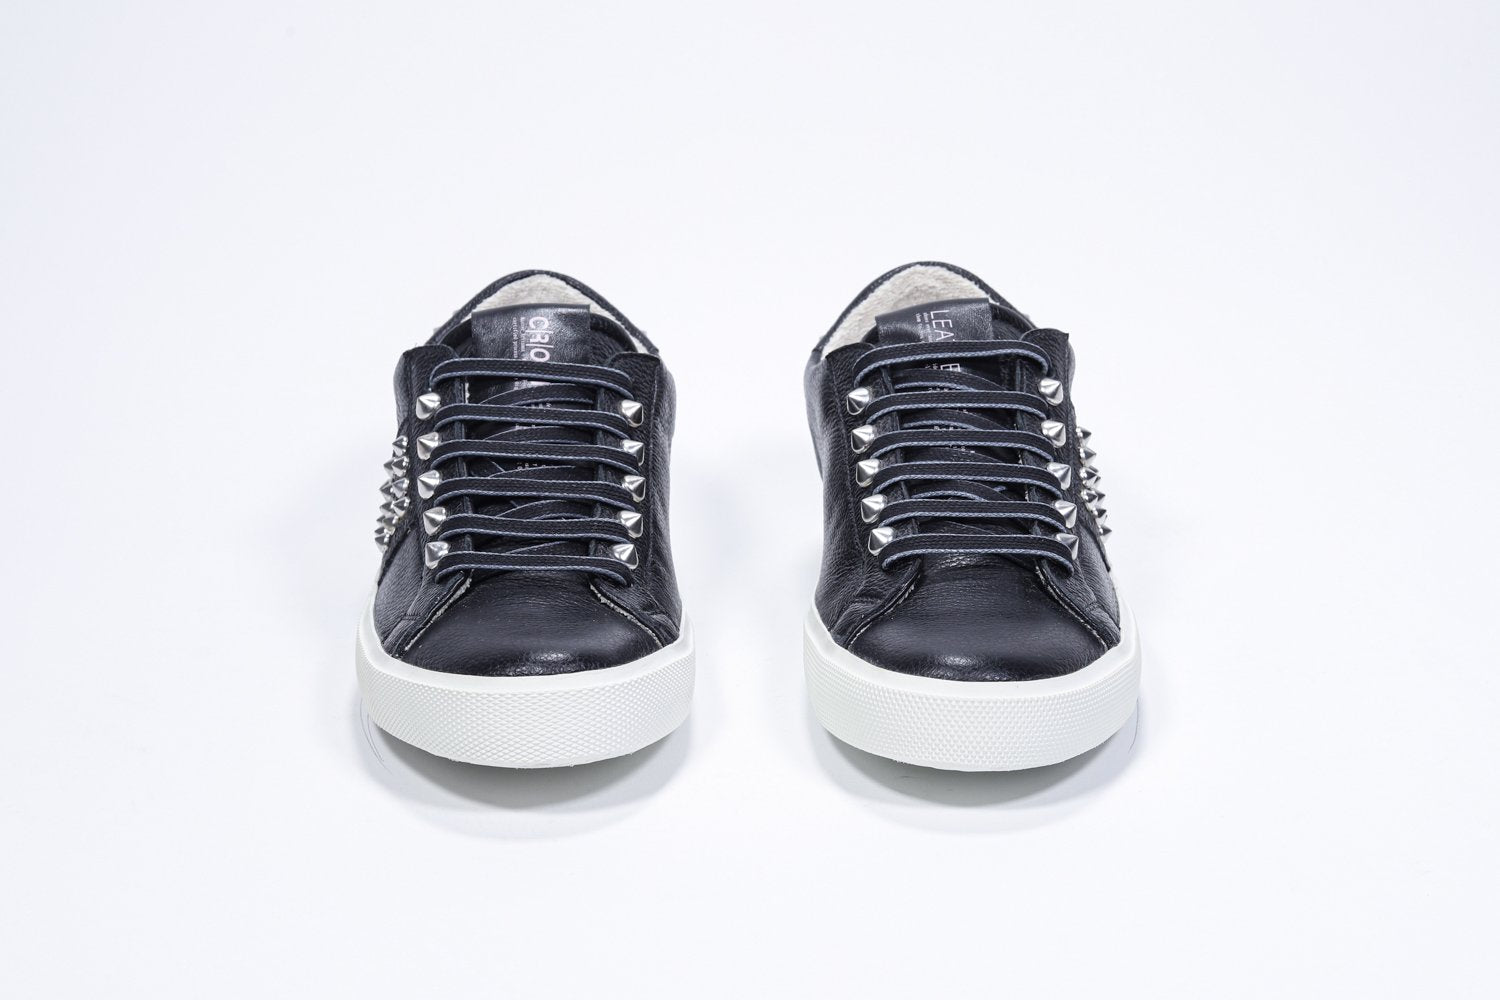 Vue de face de la chaussure noire sneaker. Tige en cuir avec clous et semelle en caoutchouc blanc.